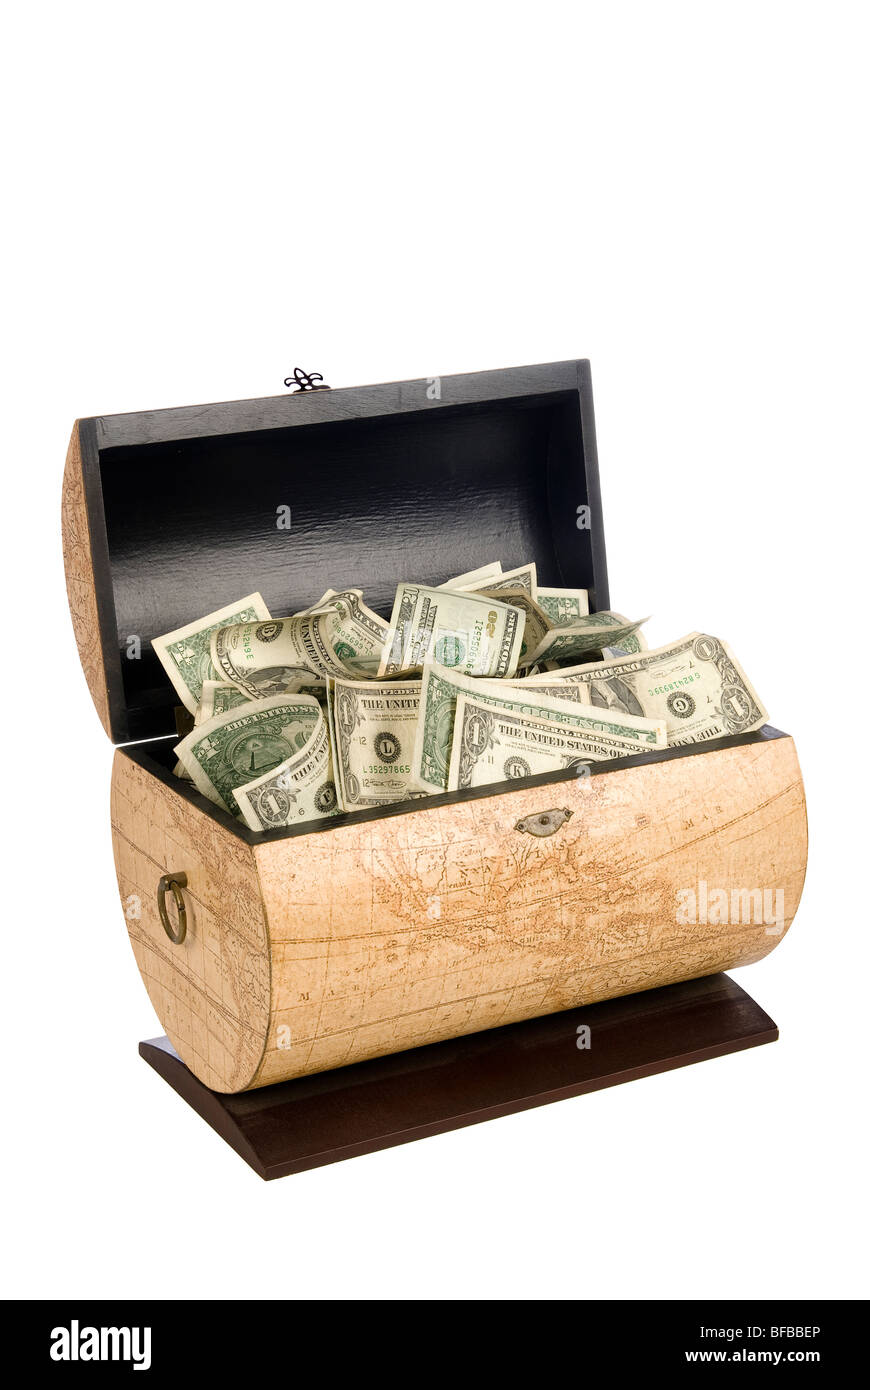 Una caja de madera llena de efectivo es una riqueza económica y financiera para la jubilación. Foto de stock